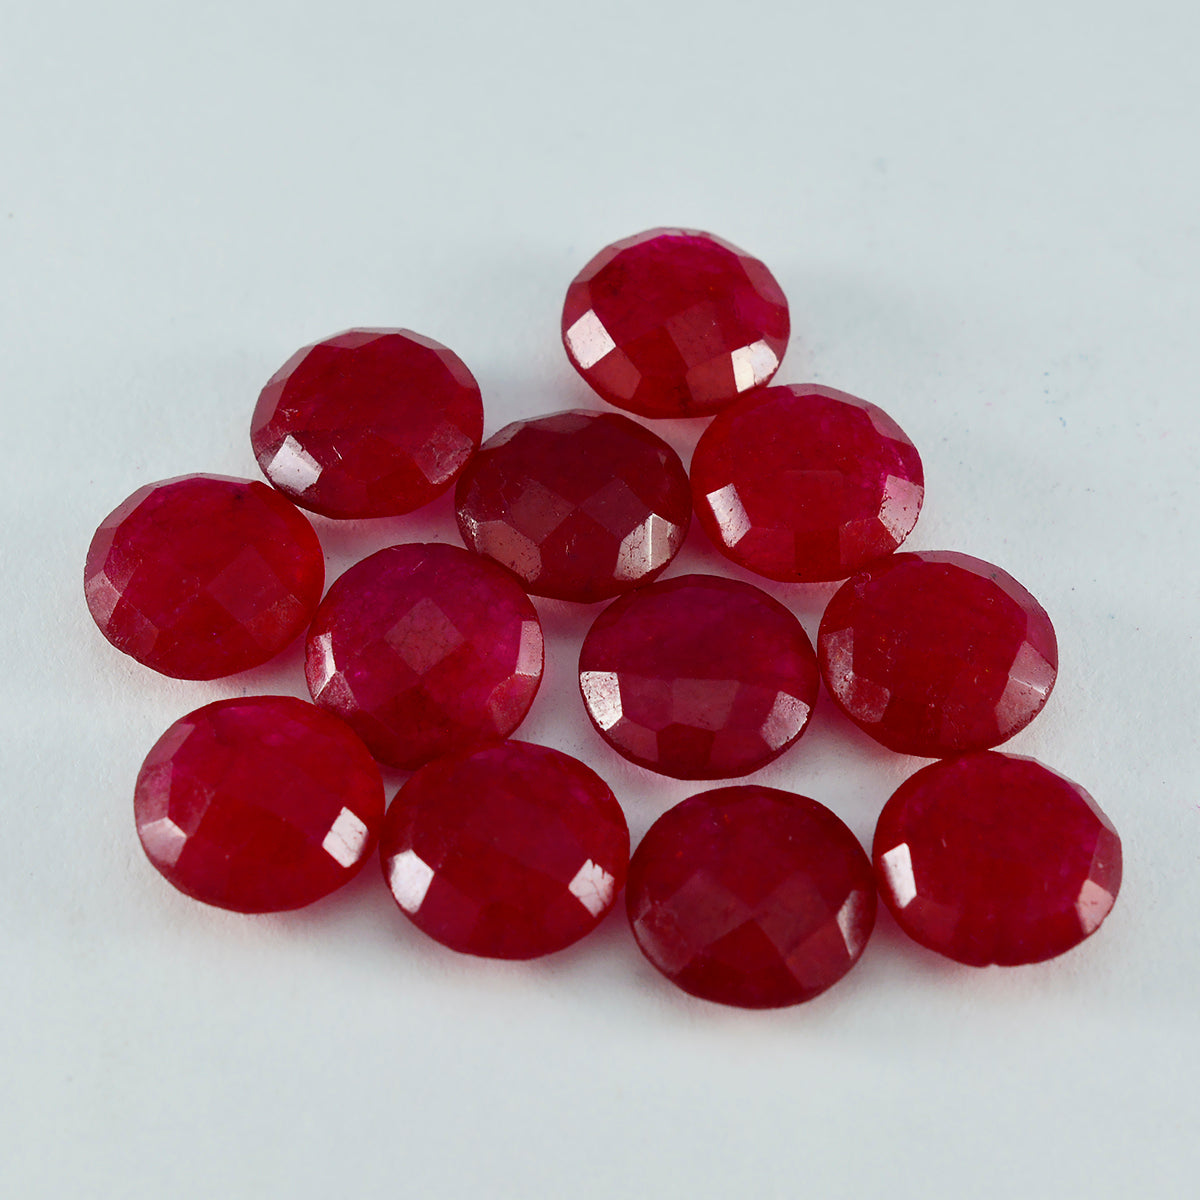 Riyogems 1 pièce véritable jaspe rouge à facettes 12x12mm forme ronde gemme de qualité aaa